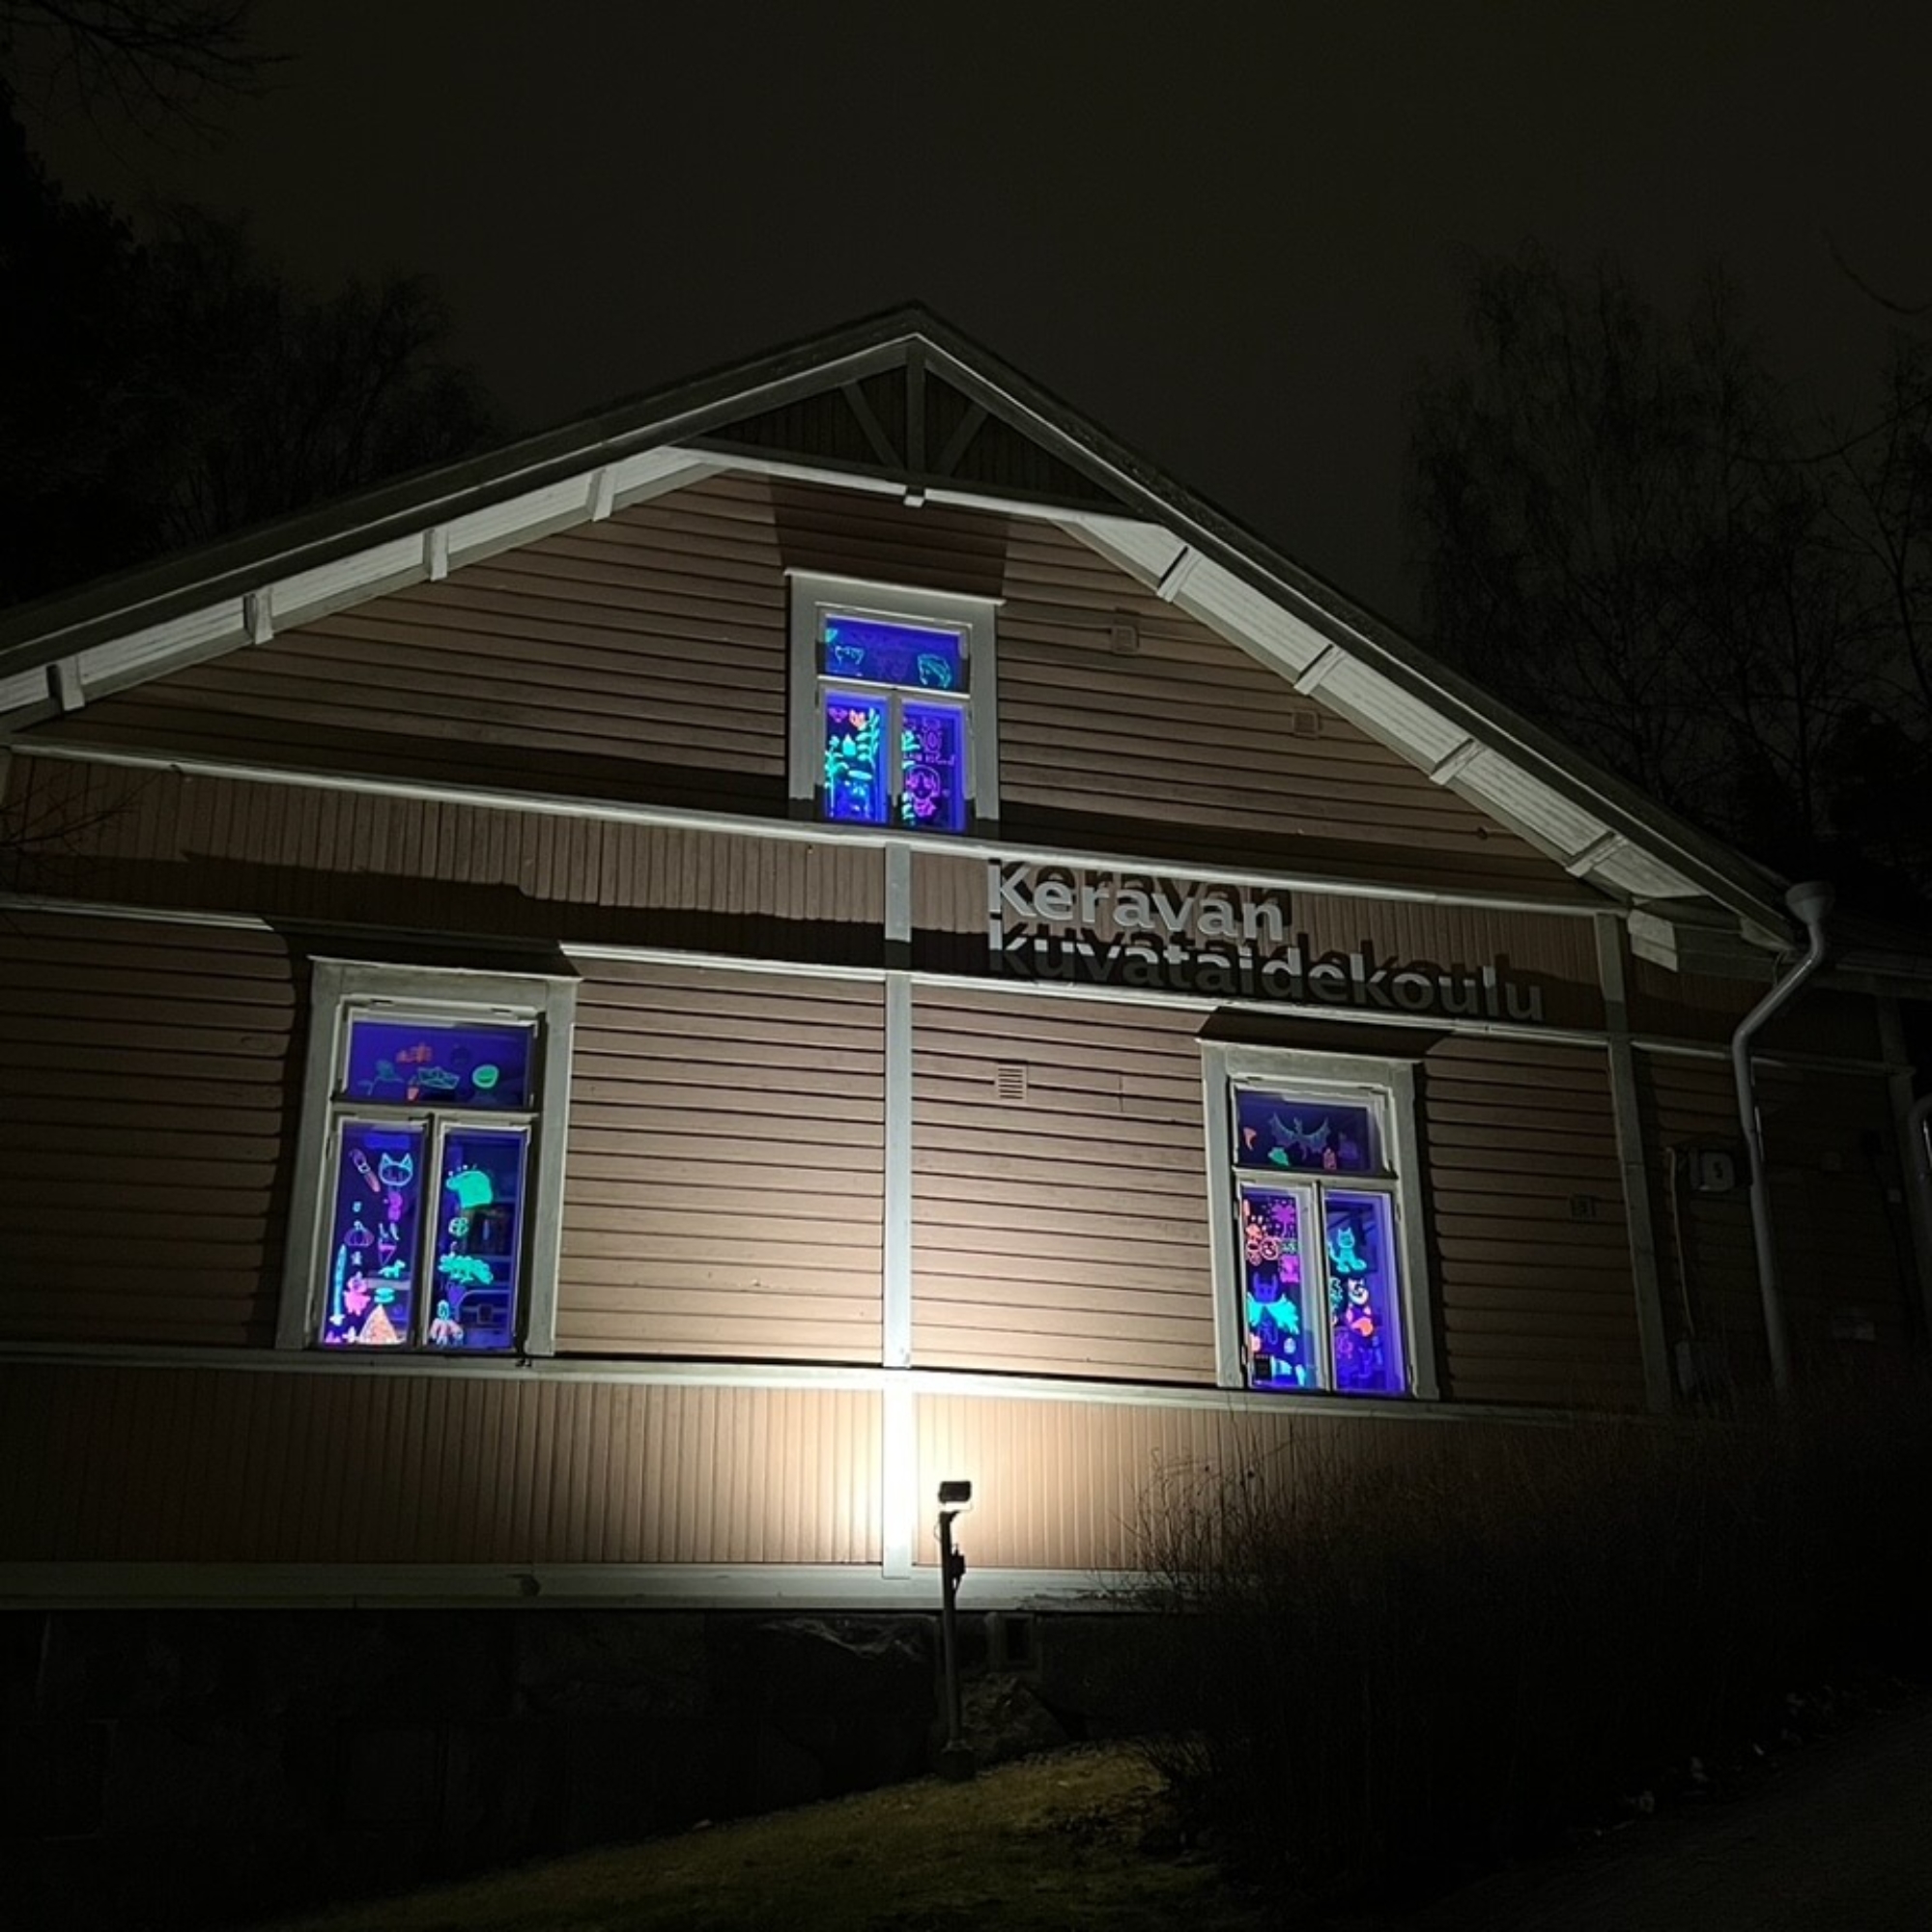 UV-valolla valaistuja värikkäitä piirroksia Keravan kuvataidekoulun ikkunoissa.